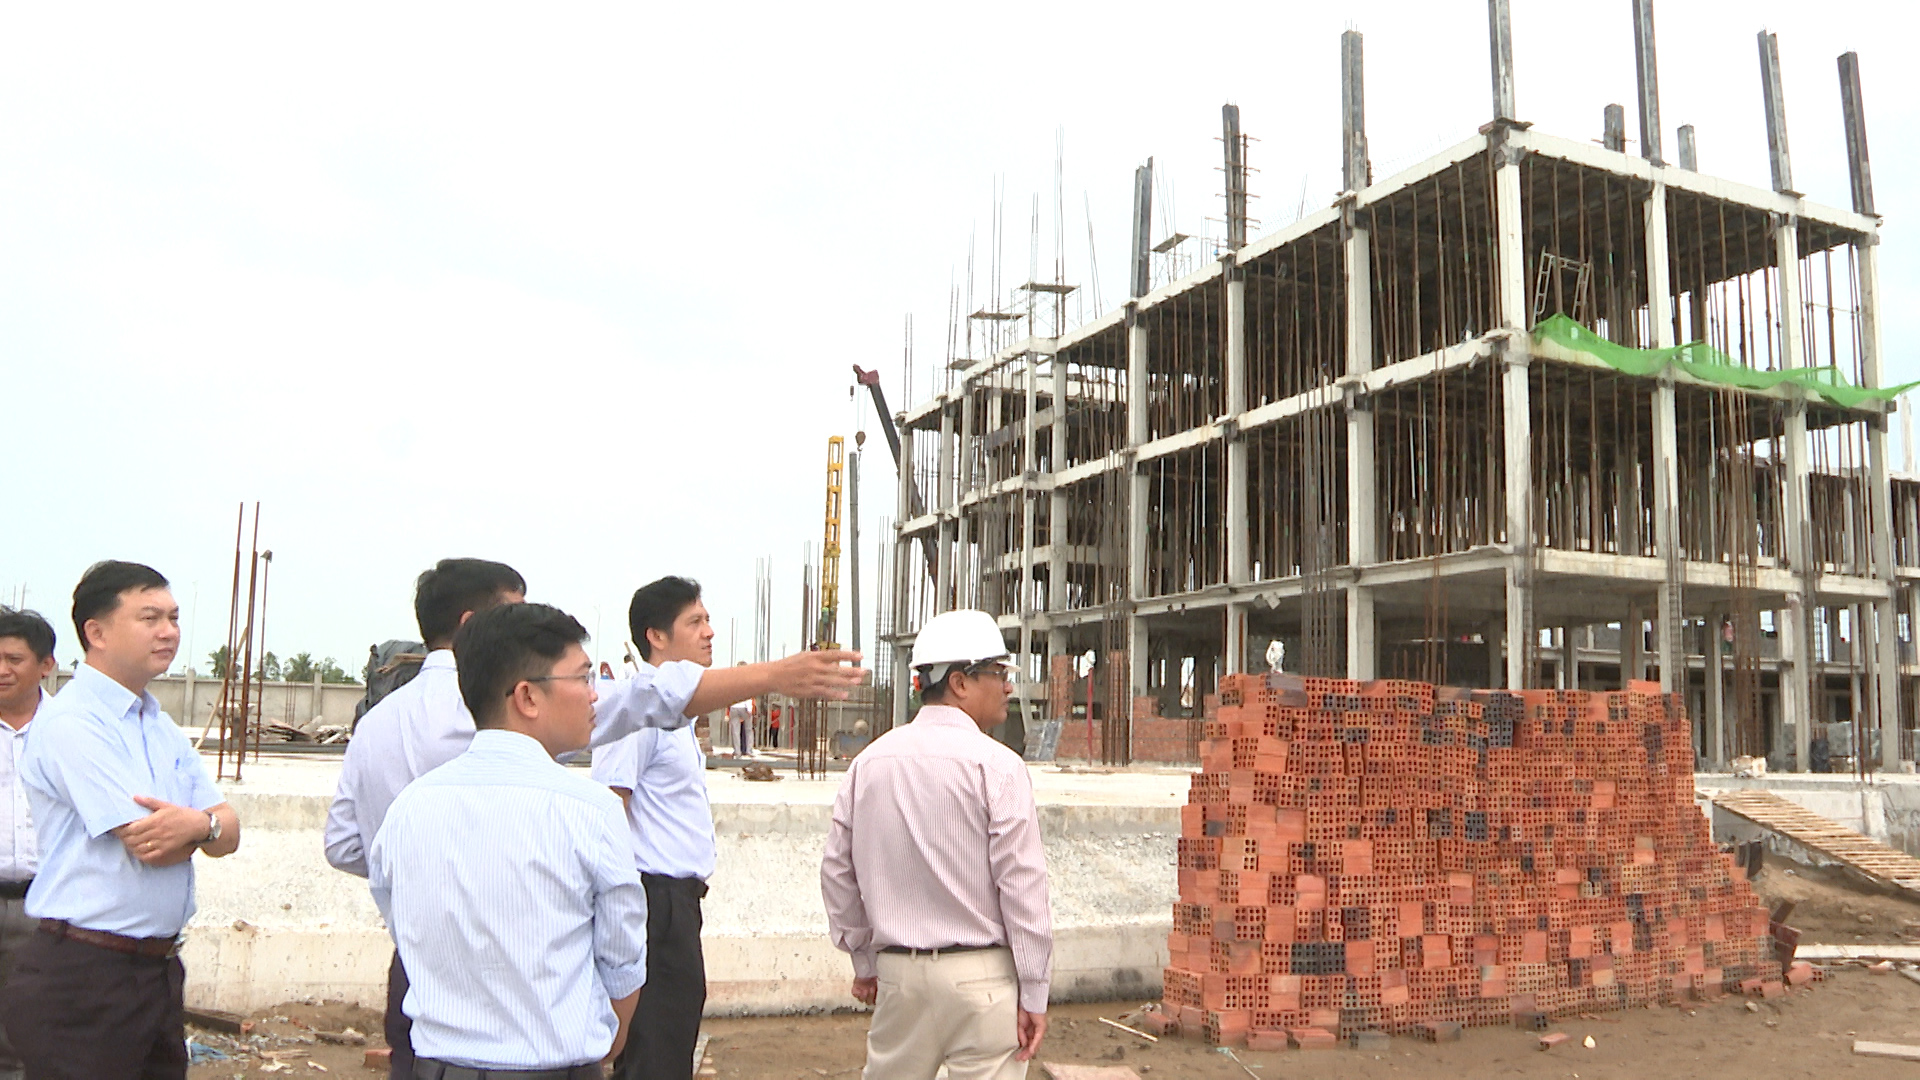 Ông Huỳnh Trung Trứ - Chủ tịch UBND quận Ninh Kiều cùng một số ban ngành chức năng, tổ chức đoàn đến kiểm tra một số công trình trọng điểm, đang được triển khai thi công trên địa bàn quận